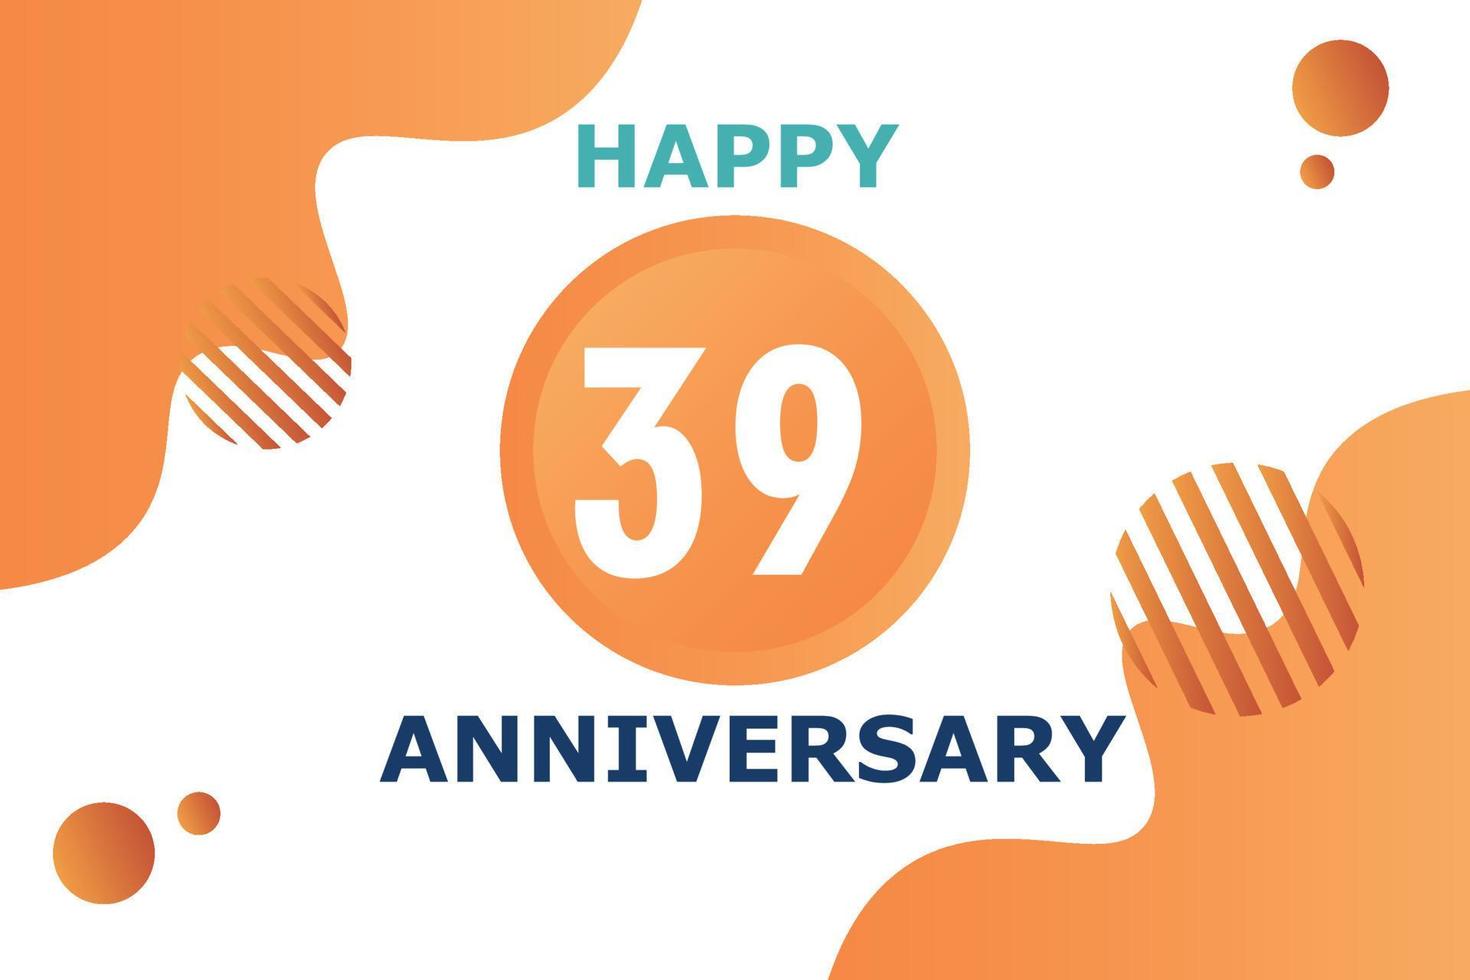 39 Jahre Jahrestag Feier geometrisch Logo Design mit Orange Blau und Weiß Farbe Nummer auf Weiß Hintergrund Vorlage vektor